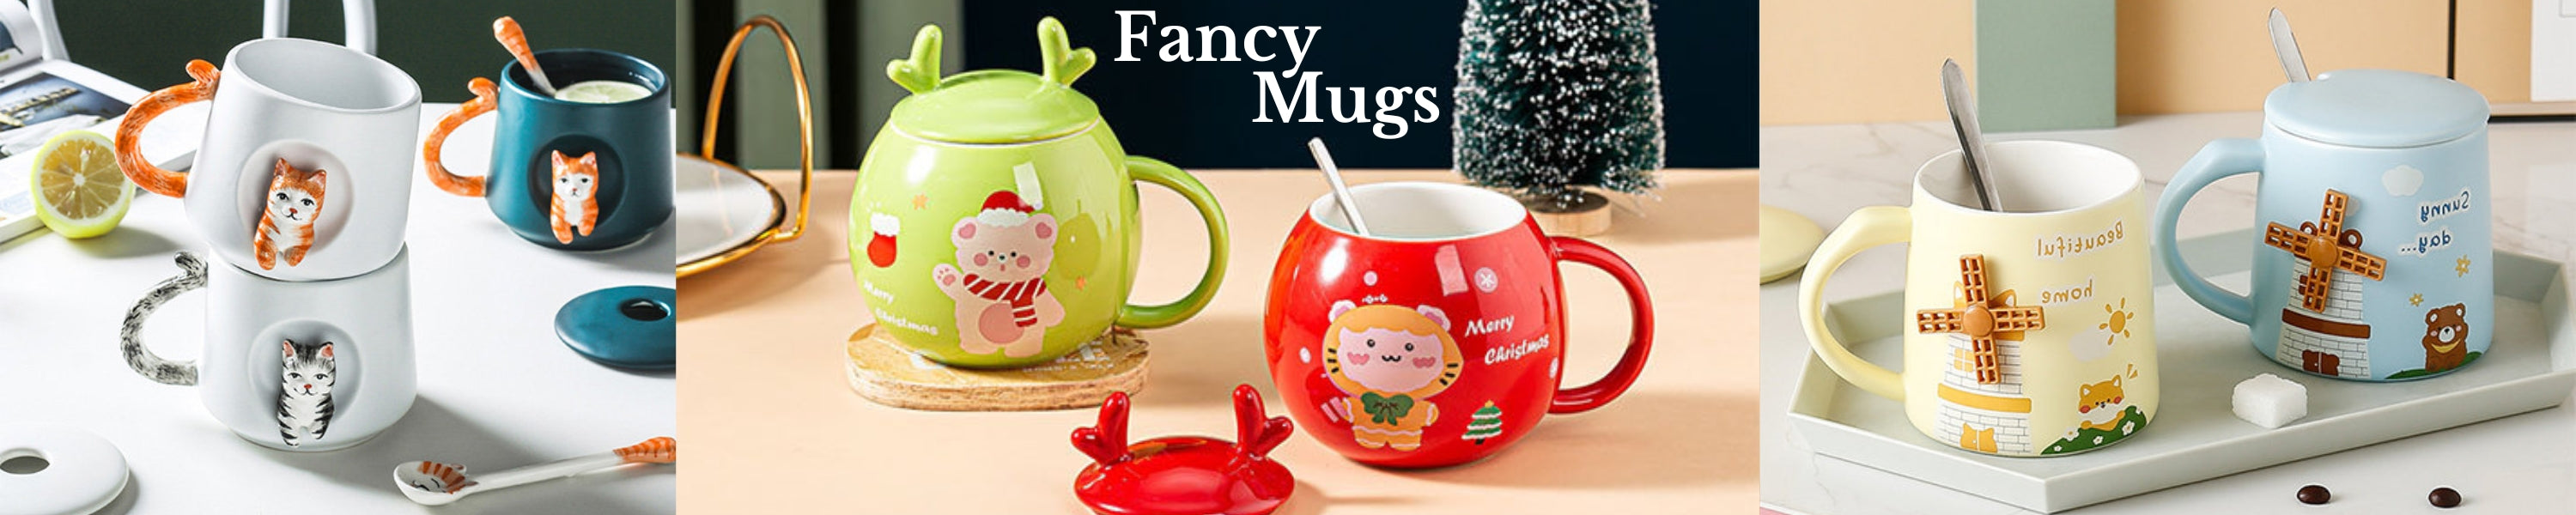 Fancy Mugs